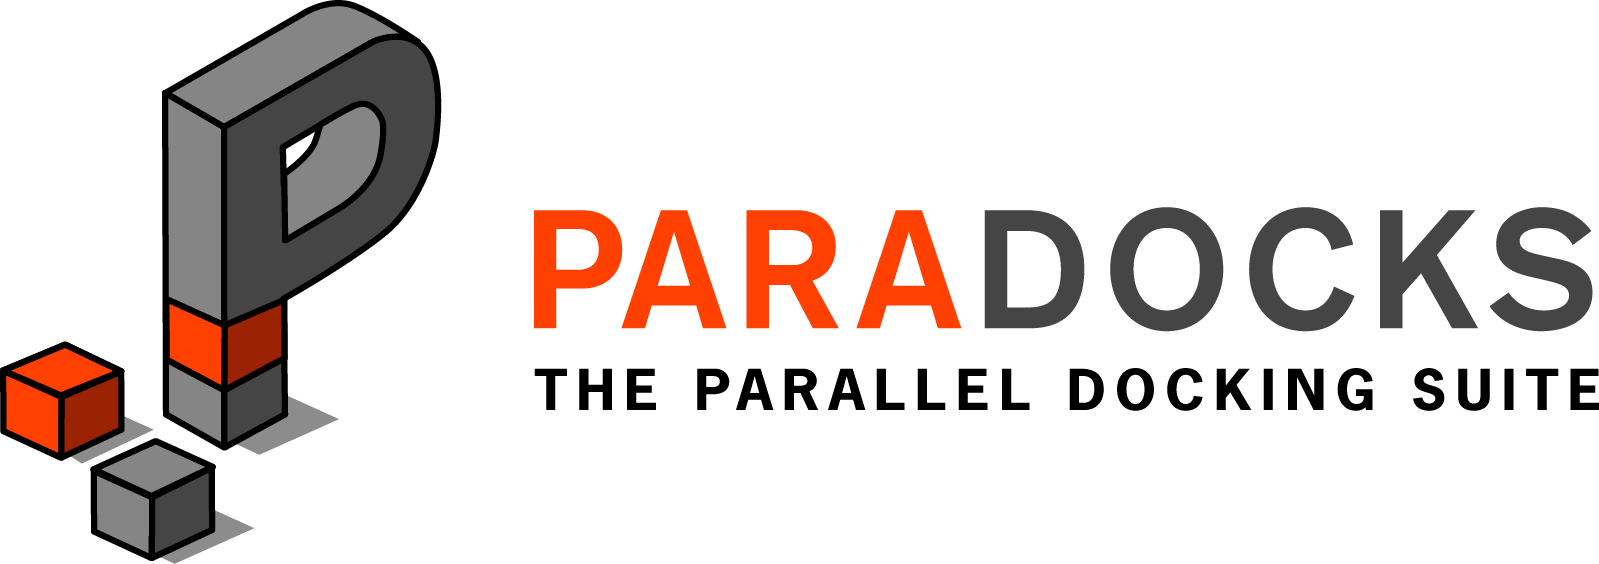 paradocks-logo.png